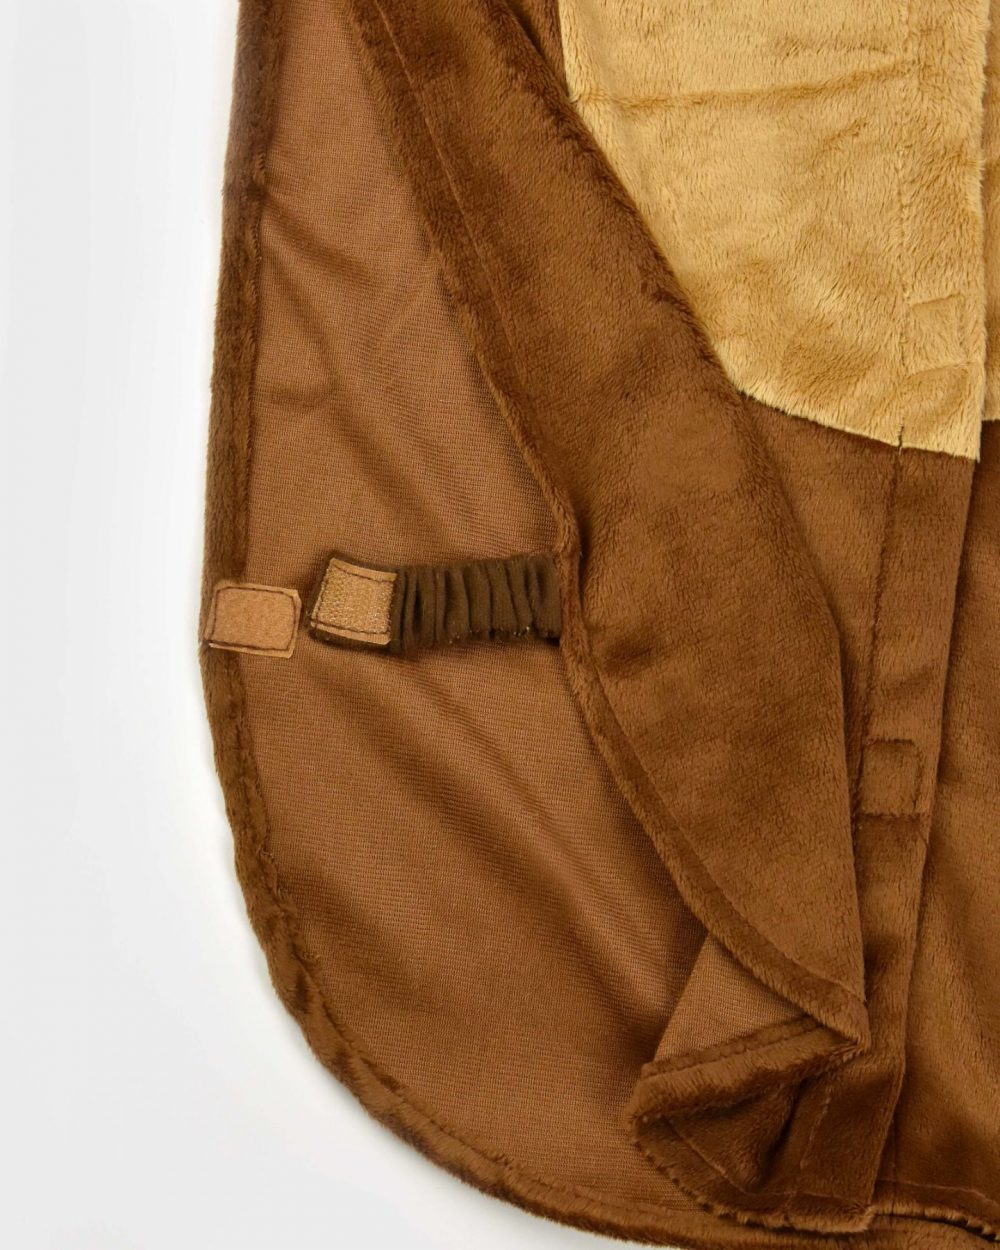 detaljbild på brun björndräkt där ett elastiskt band med kardborrefäste visas.